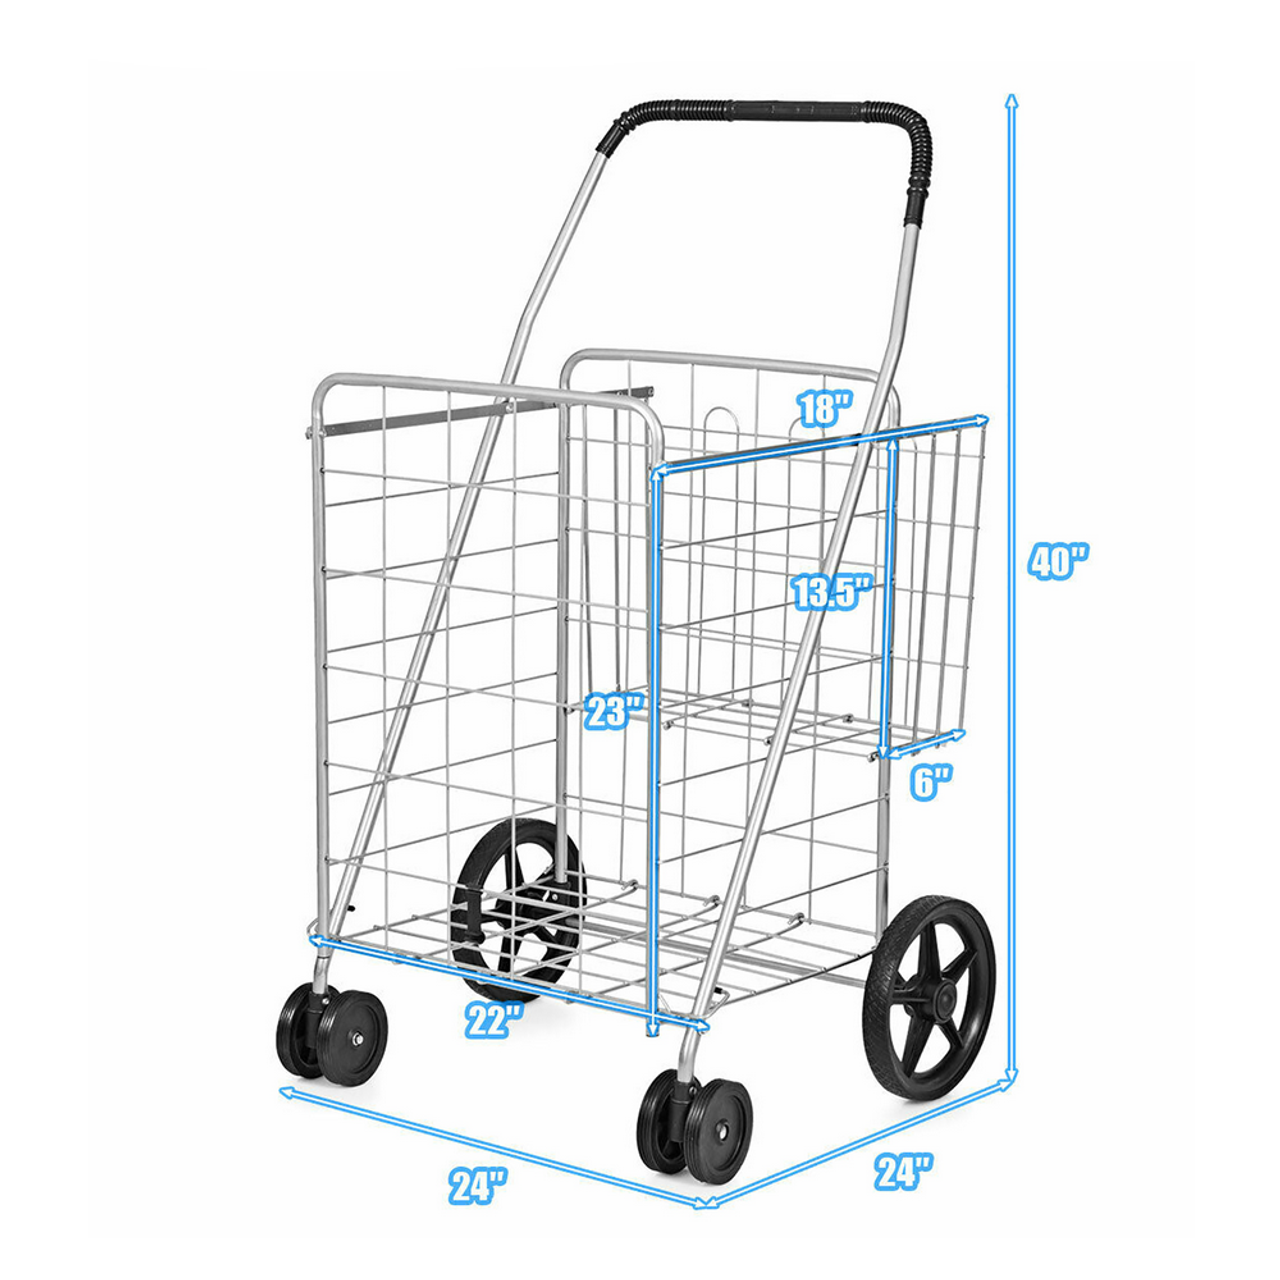 Jumbo Folding Rolling Shopping Cart product image